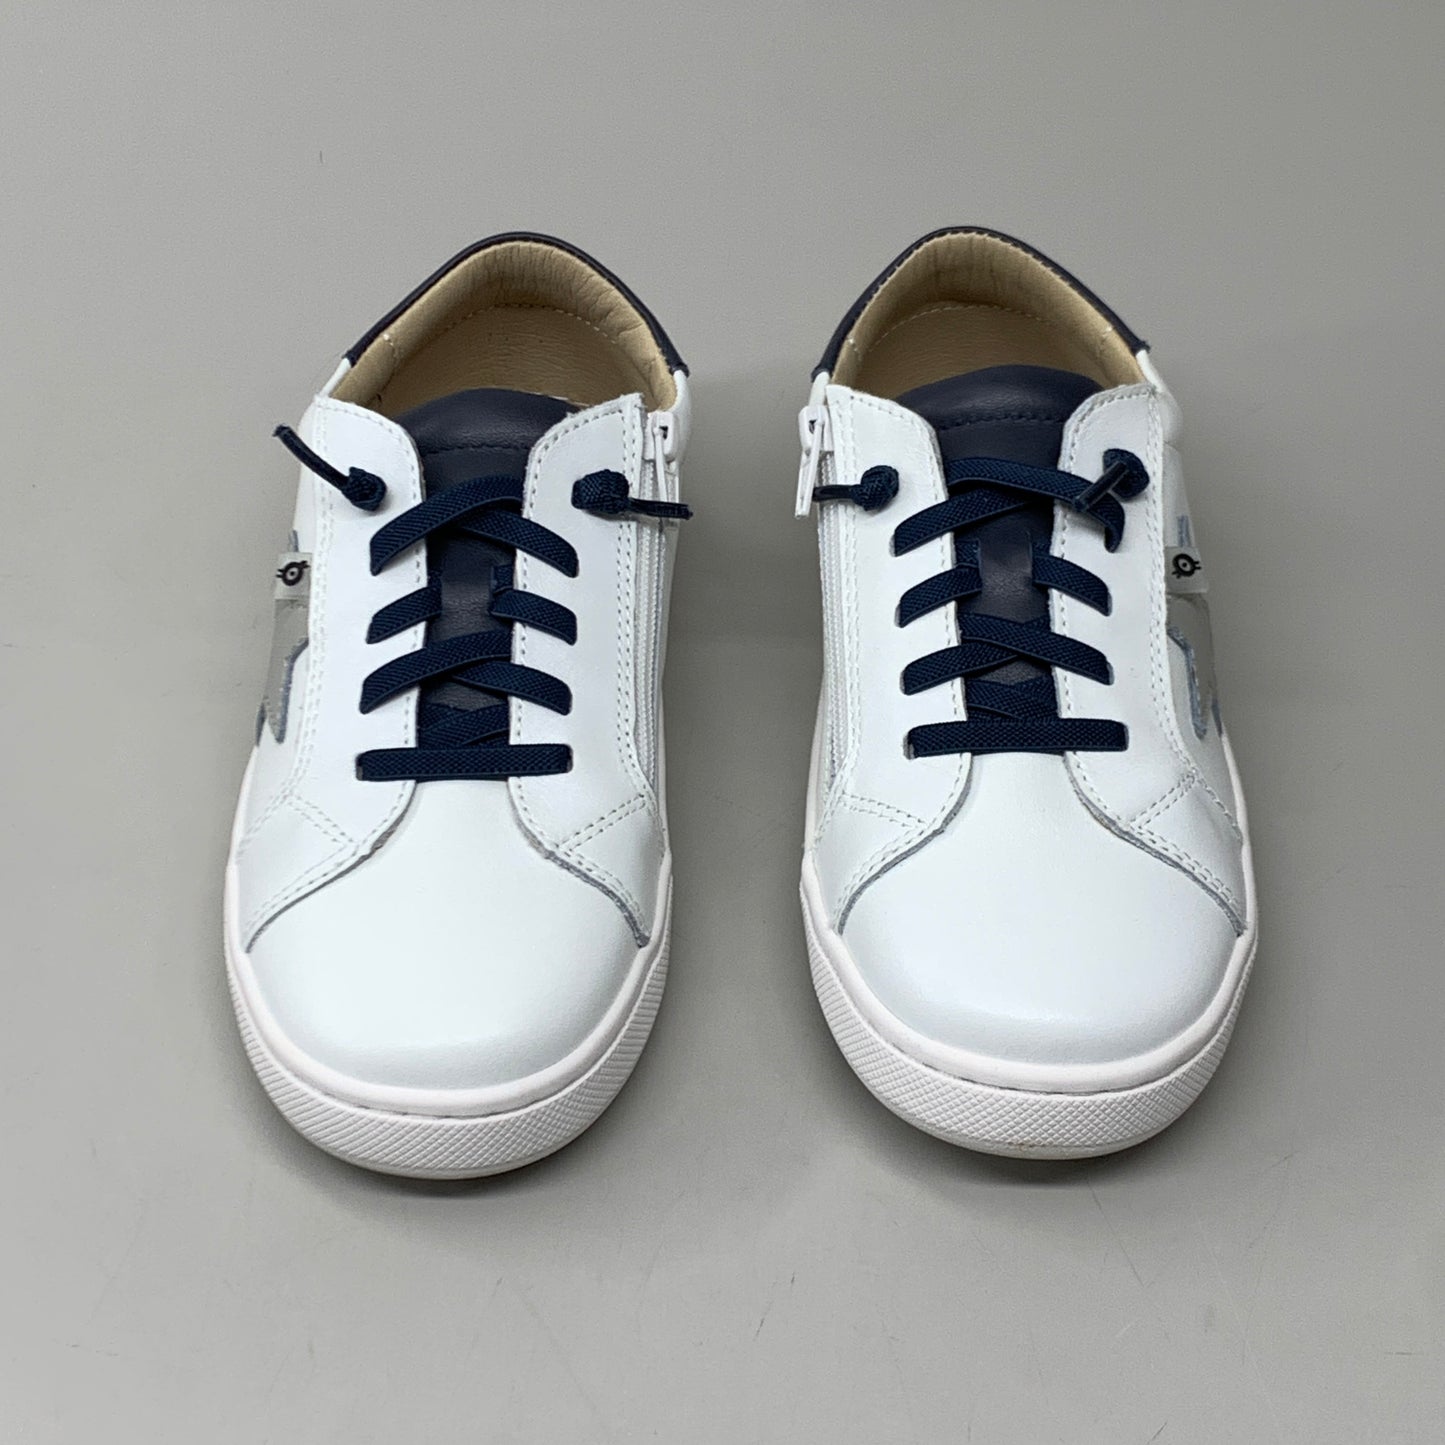 OLD SOLES Comet Runner Sneakers Kid’s Sz 9 EU 25 Snow/Navy/Gris #6149